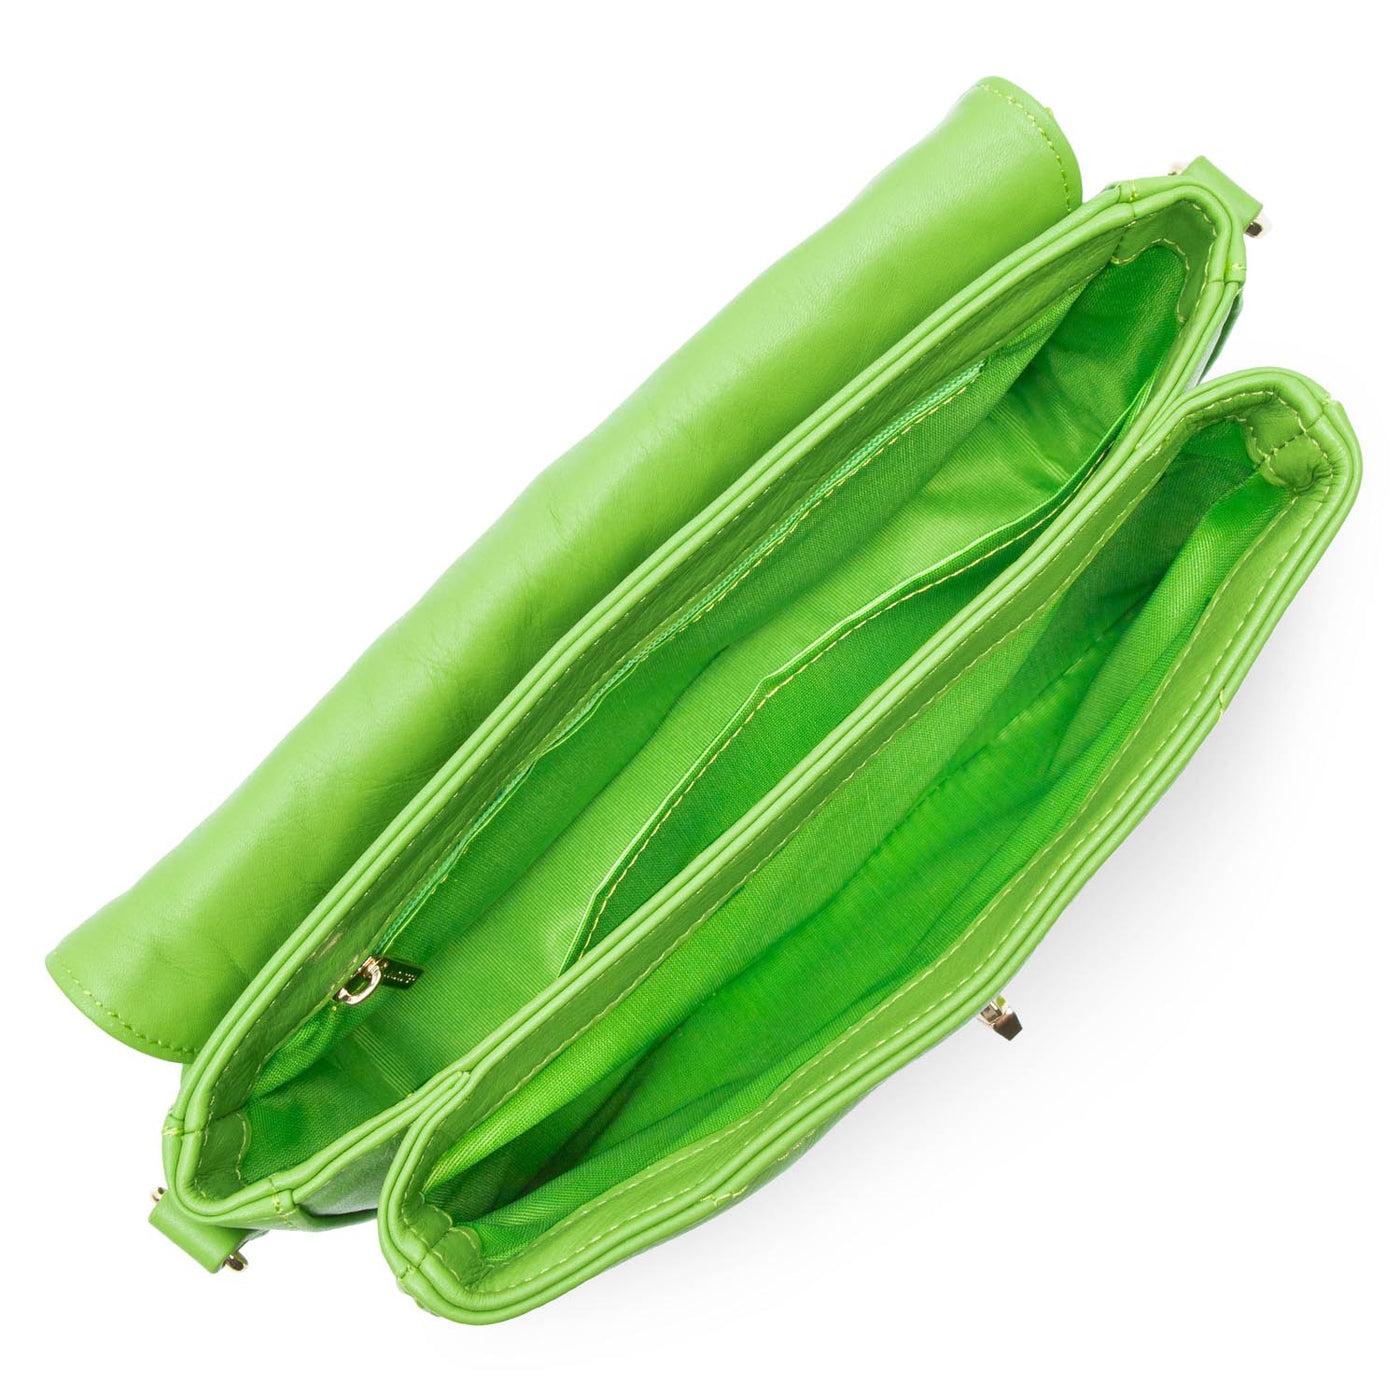 crossbody bag - soft matelassé #couleur_vert-mousse